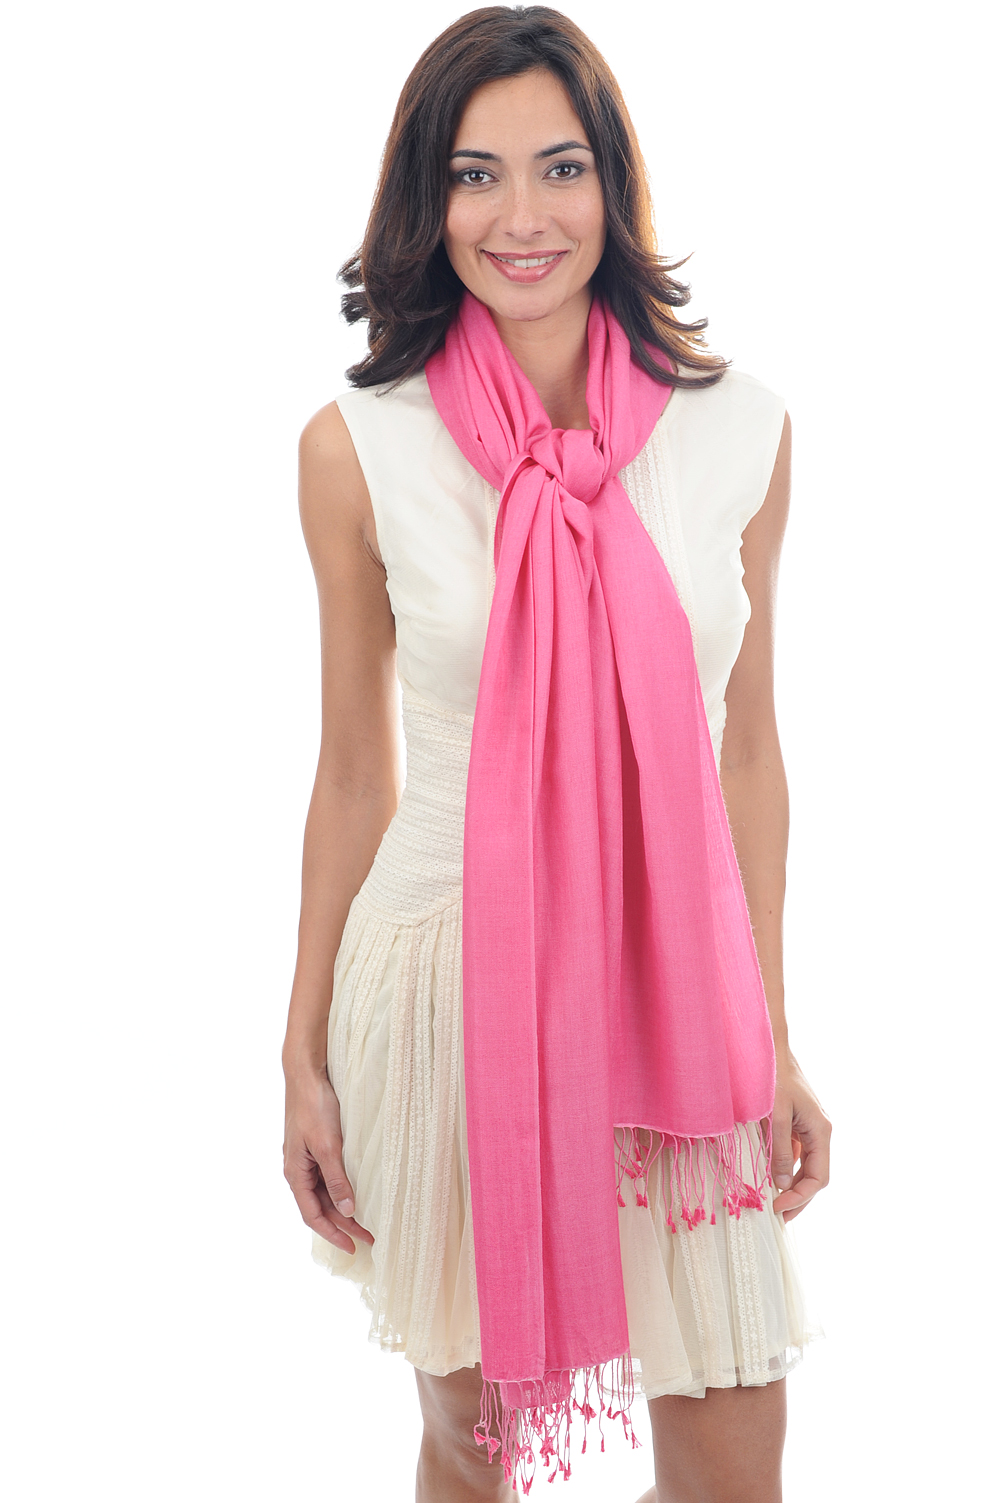 Cashmere & Silk accessories platine shocking pink 201 cm x 71 cm